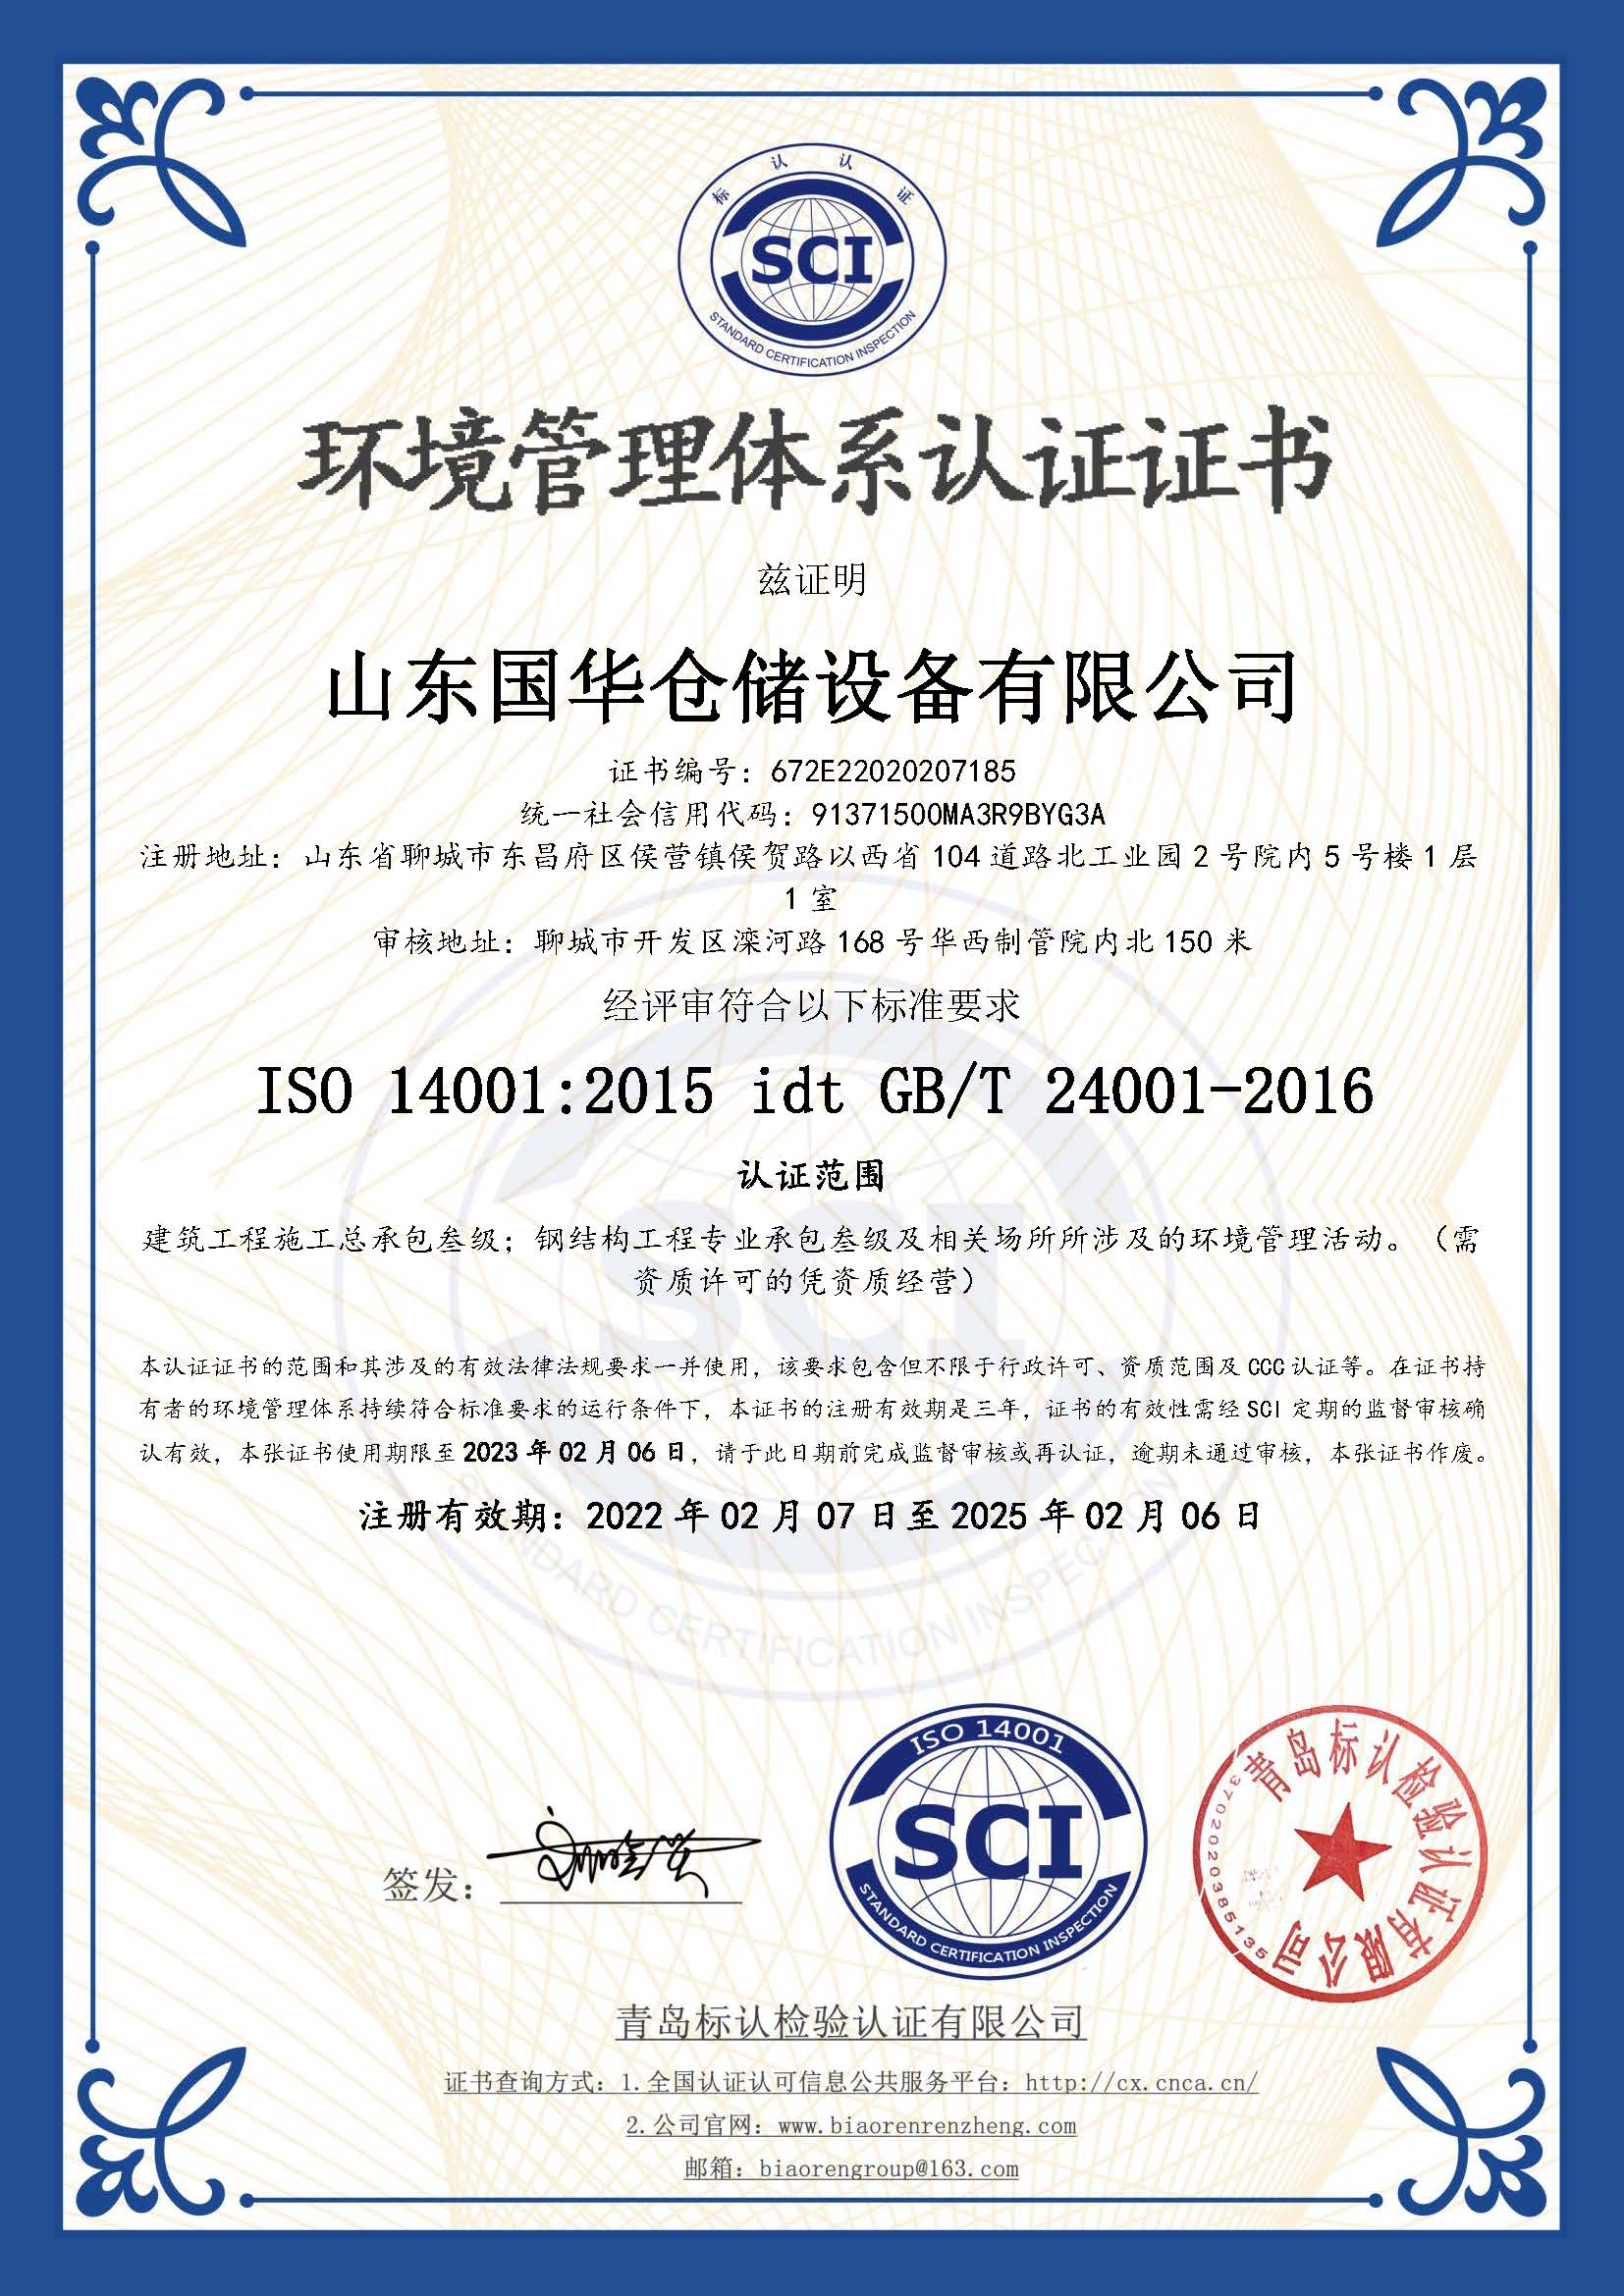 郴州钢板仓环境管理体系认证证书